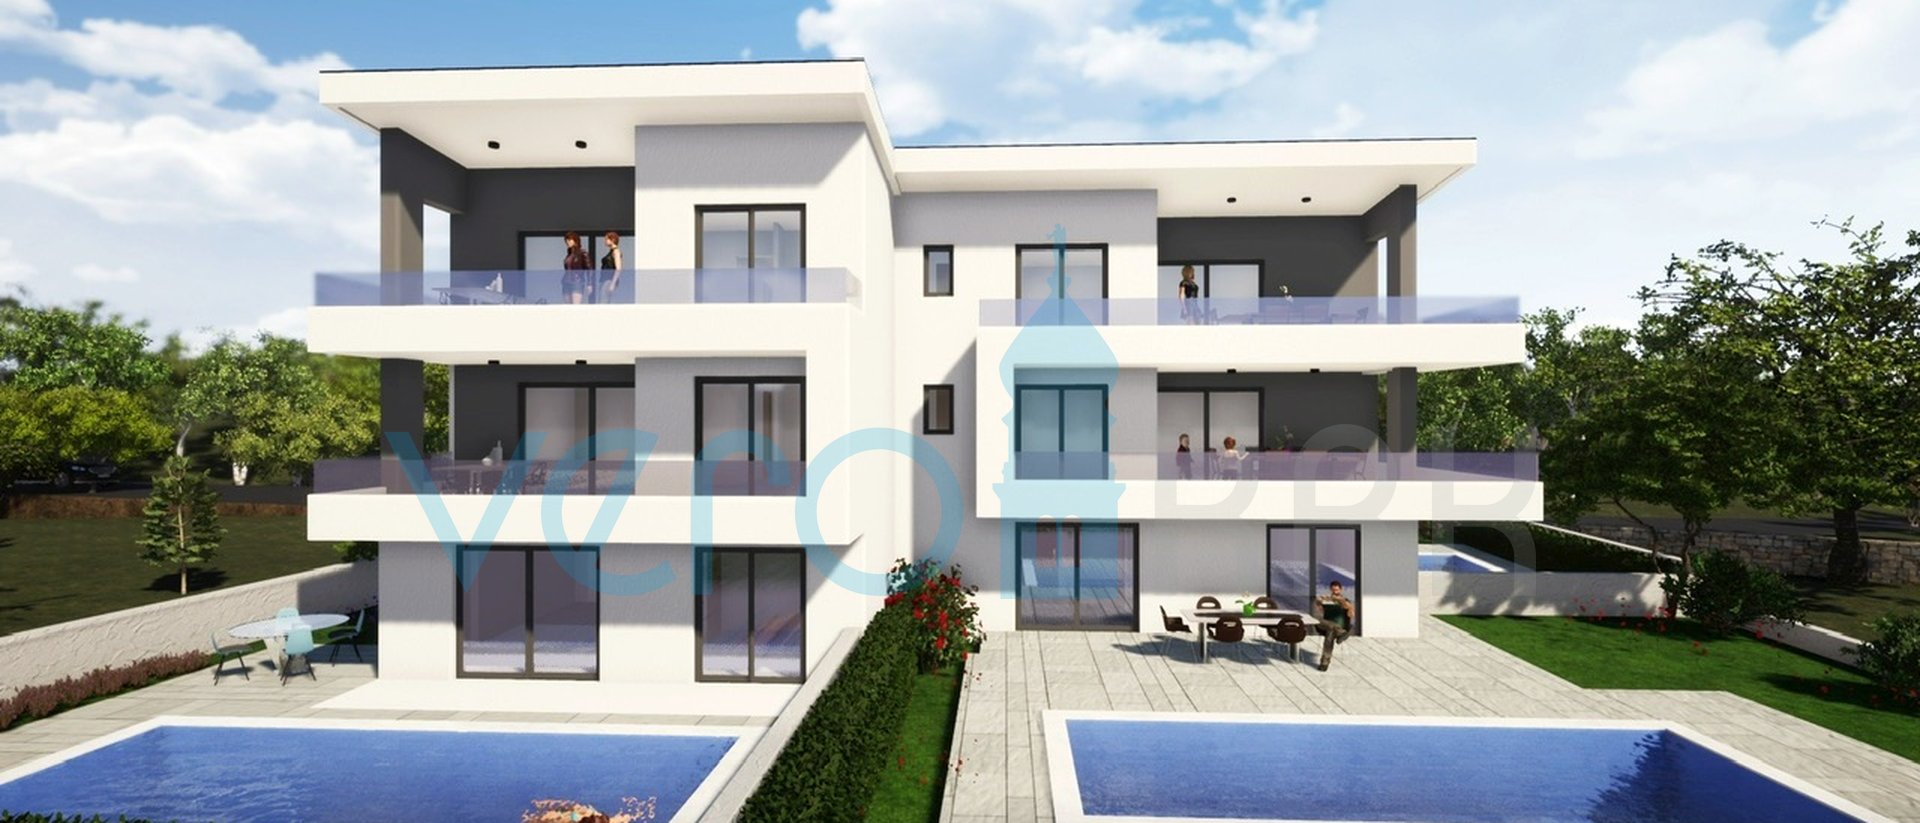 Malinska, Neubau, moderne Wohnung 83 m2 mit Swimmingpool und Einzimmerwohnung 45 m2 mit Garten, zu verkaufen